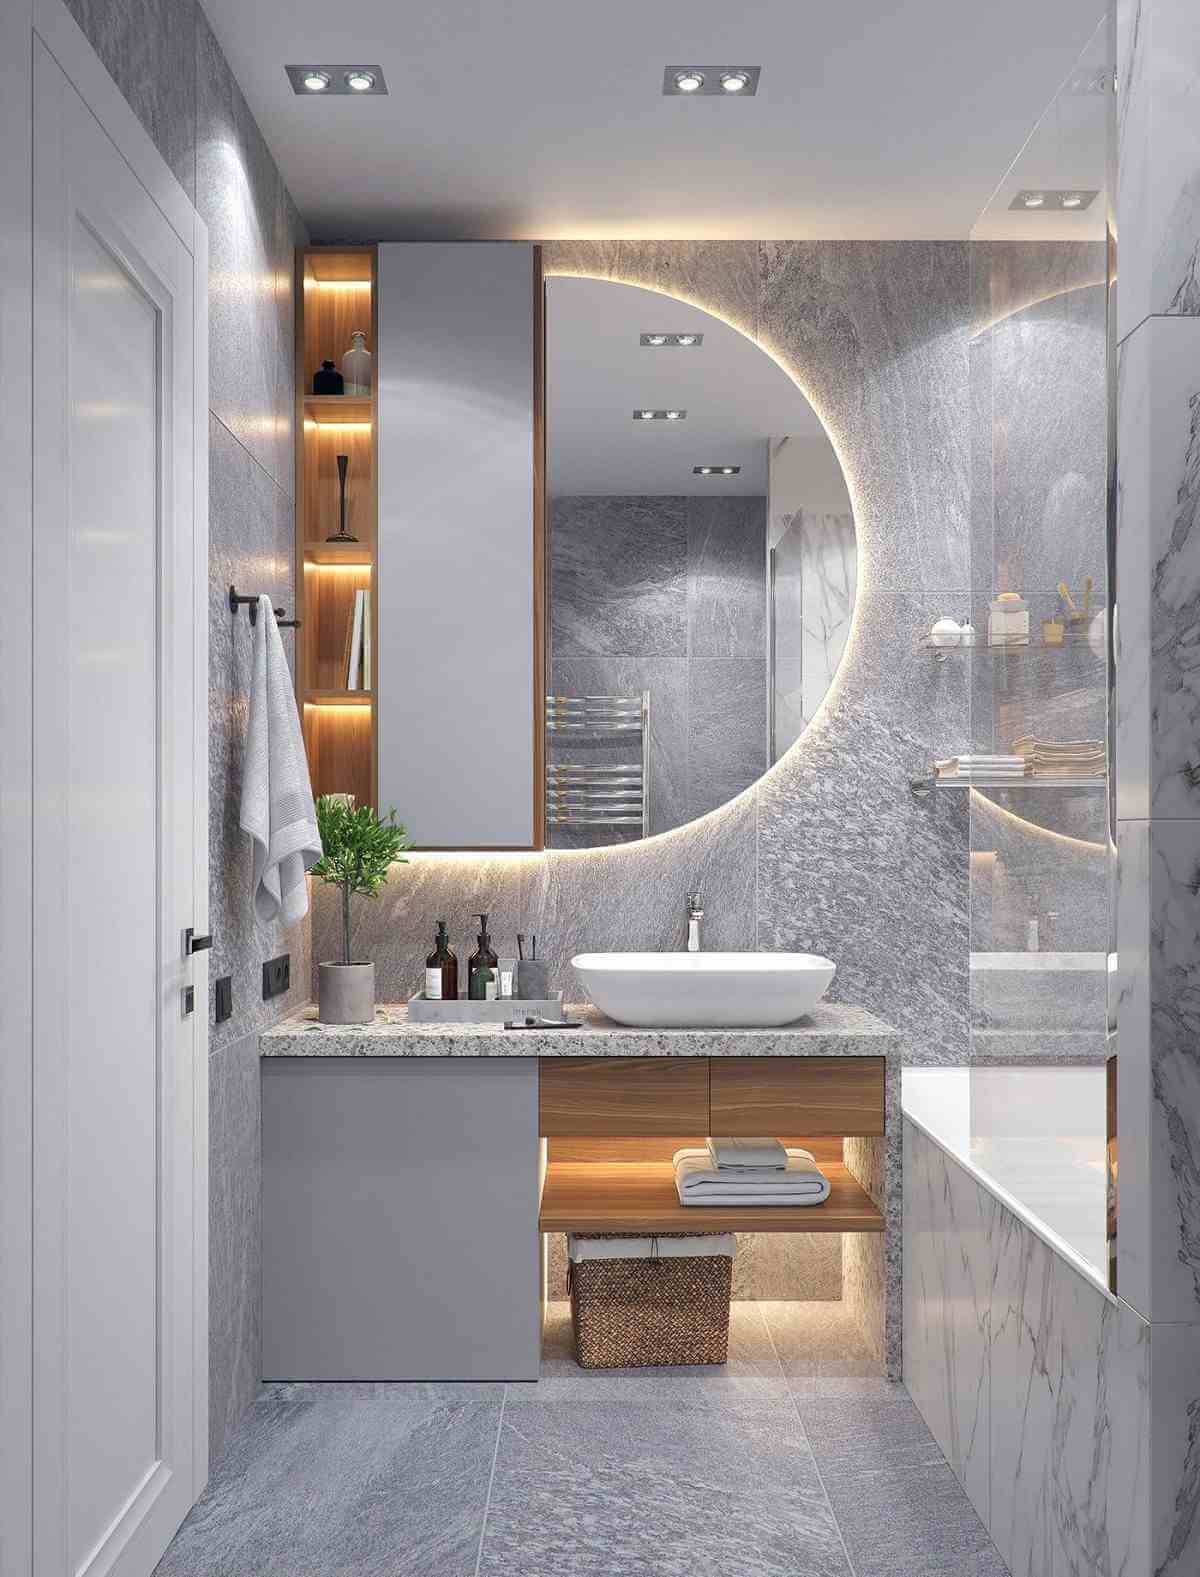 Mẫu thiết kế phòng tắm nhỏ đẹp: Bạn đang tìm kiếm mẫu thiết kế phòng tắm nhỏ đẹp năm 2024 để cải thiện không gian phòng tắm của mình? Hãy dành thời gian tham khảo các mẫu thiết kế phòng tắm nhỏ đẹp và thông minh trên mạng để tìm cho mình một ý tưởng mới.